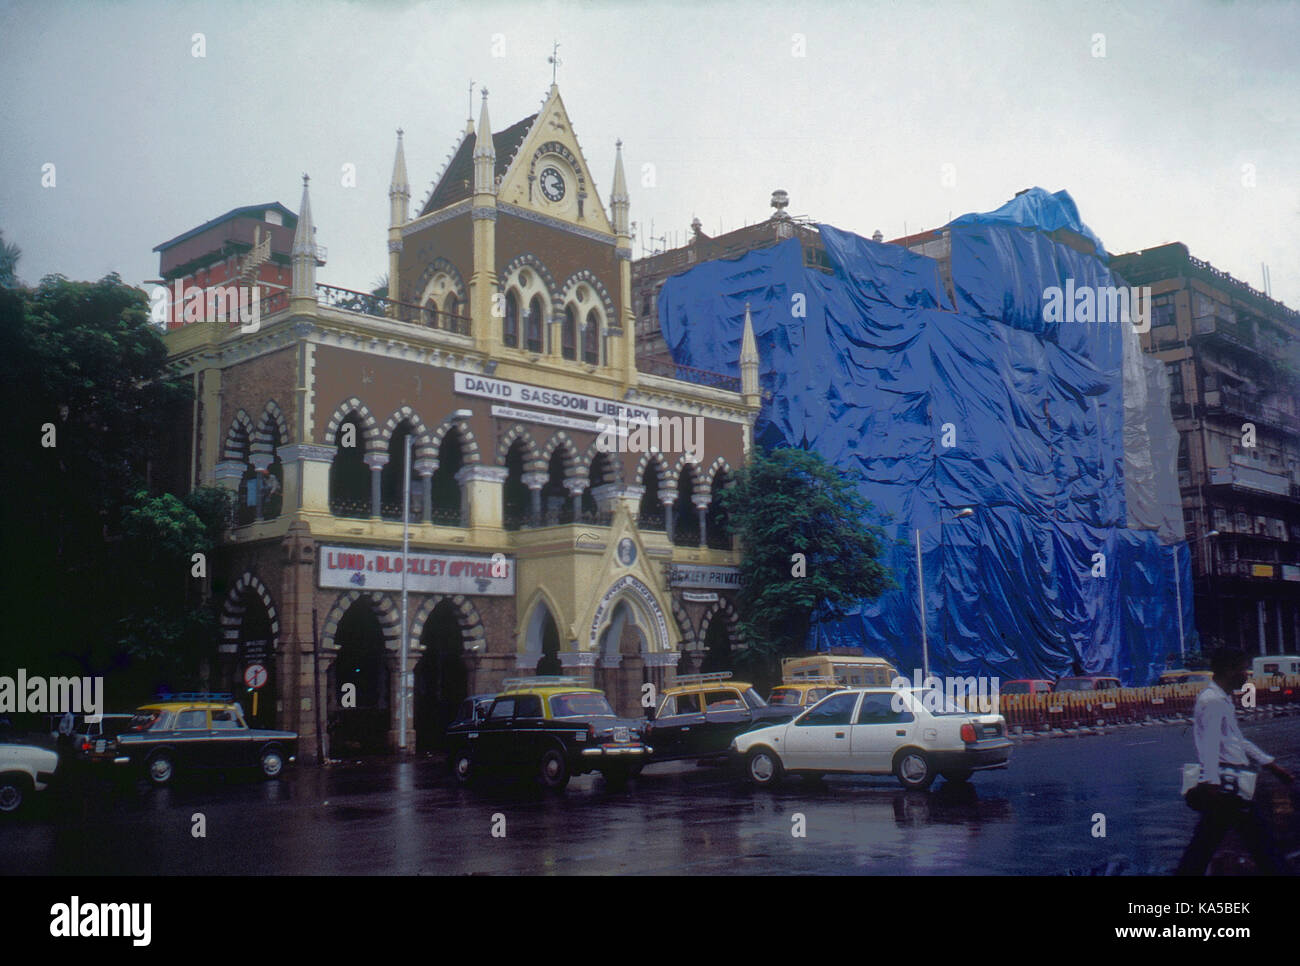 david sassoon Library and army navy building, mumbai, maharashtra, India, Asia Stock Photo